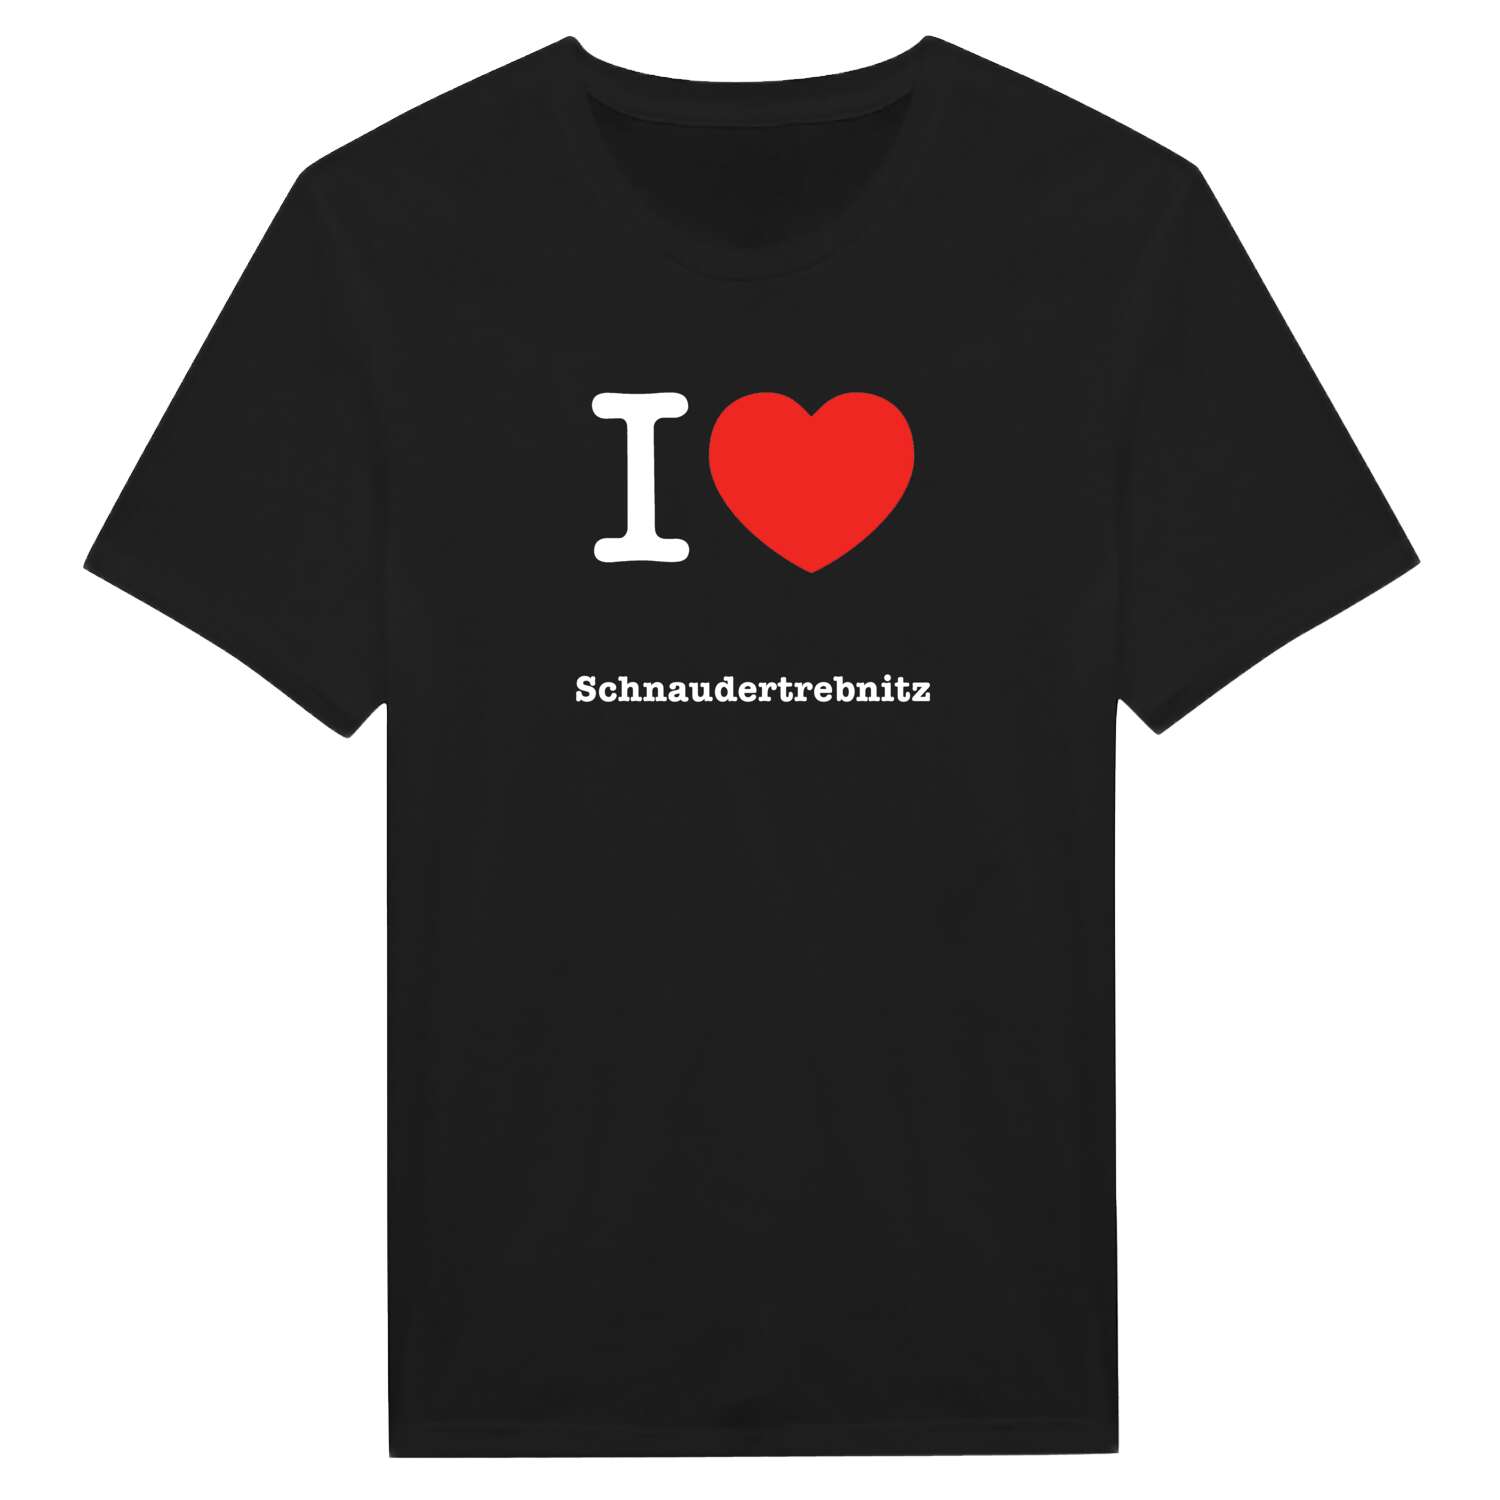 Schnaudertrebnitz T-Shirt »I love«